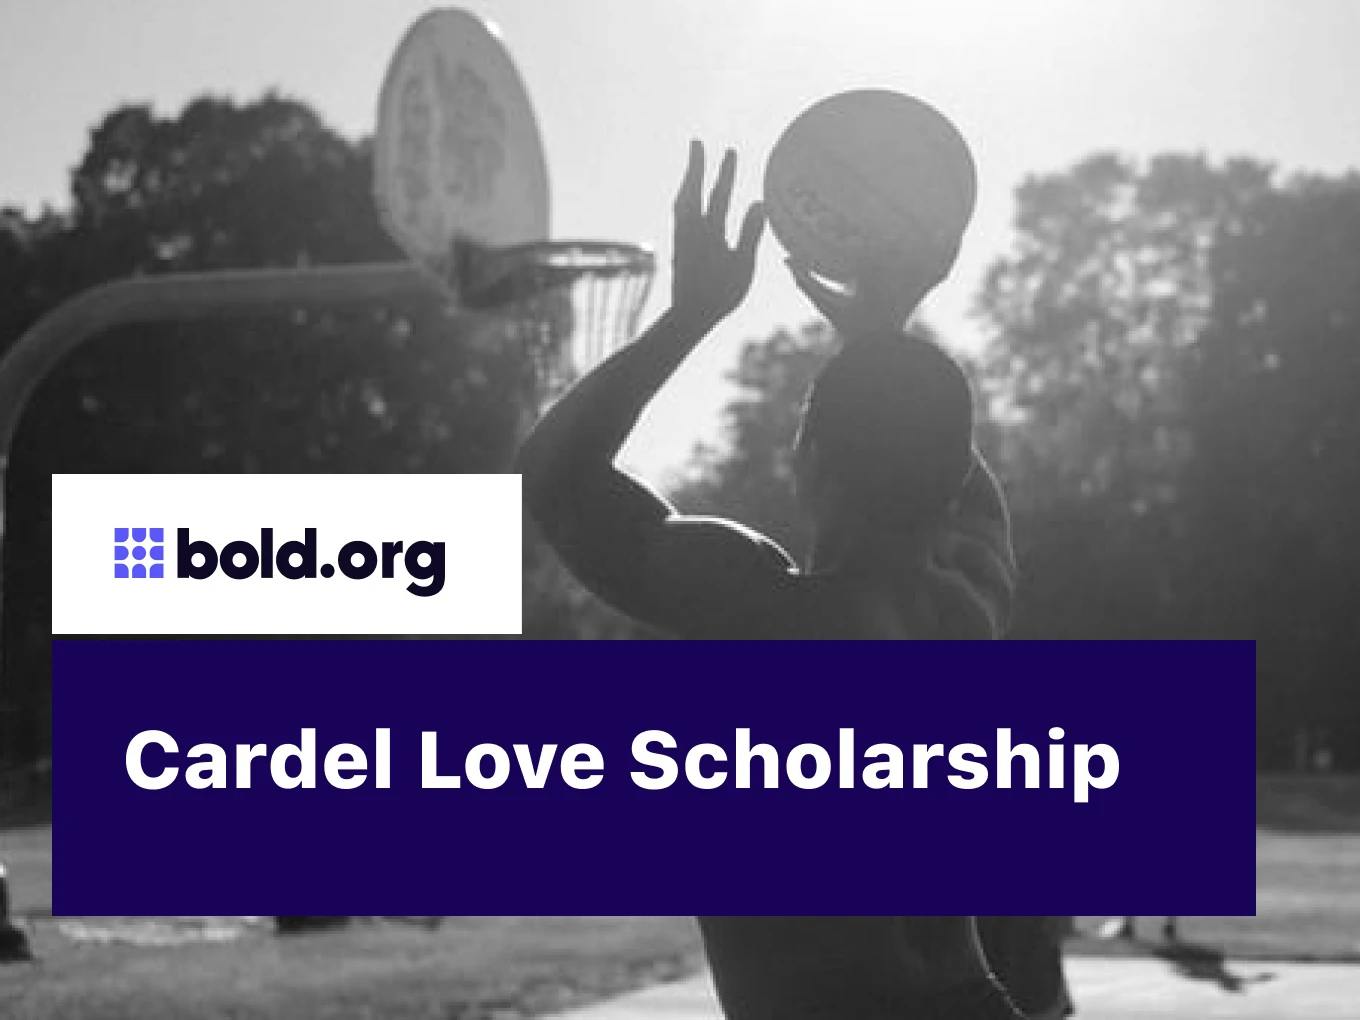 Cardel Love Scholarship